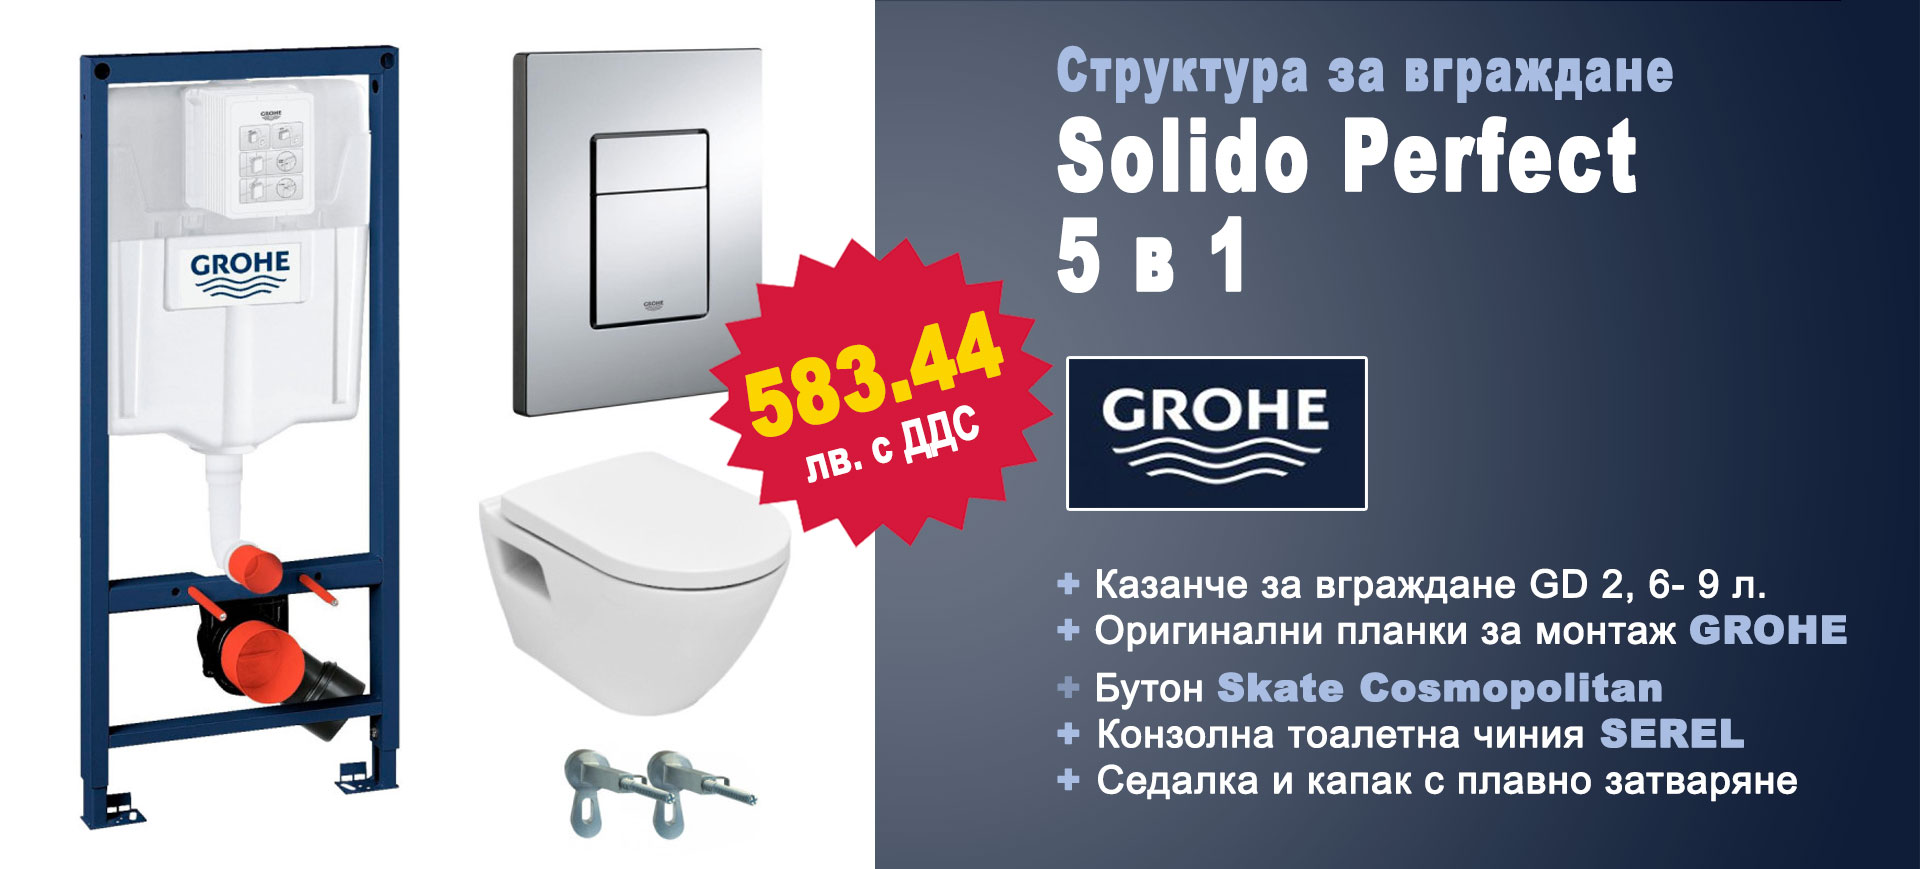 Комплект за вграждане GROHE Solido Perfect 5 в 1 на специална цена